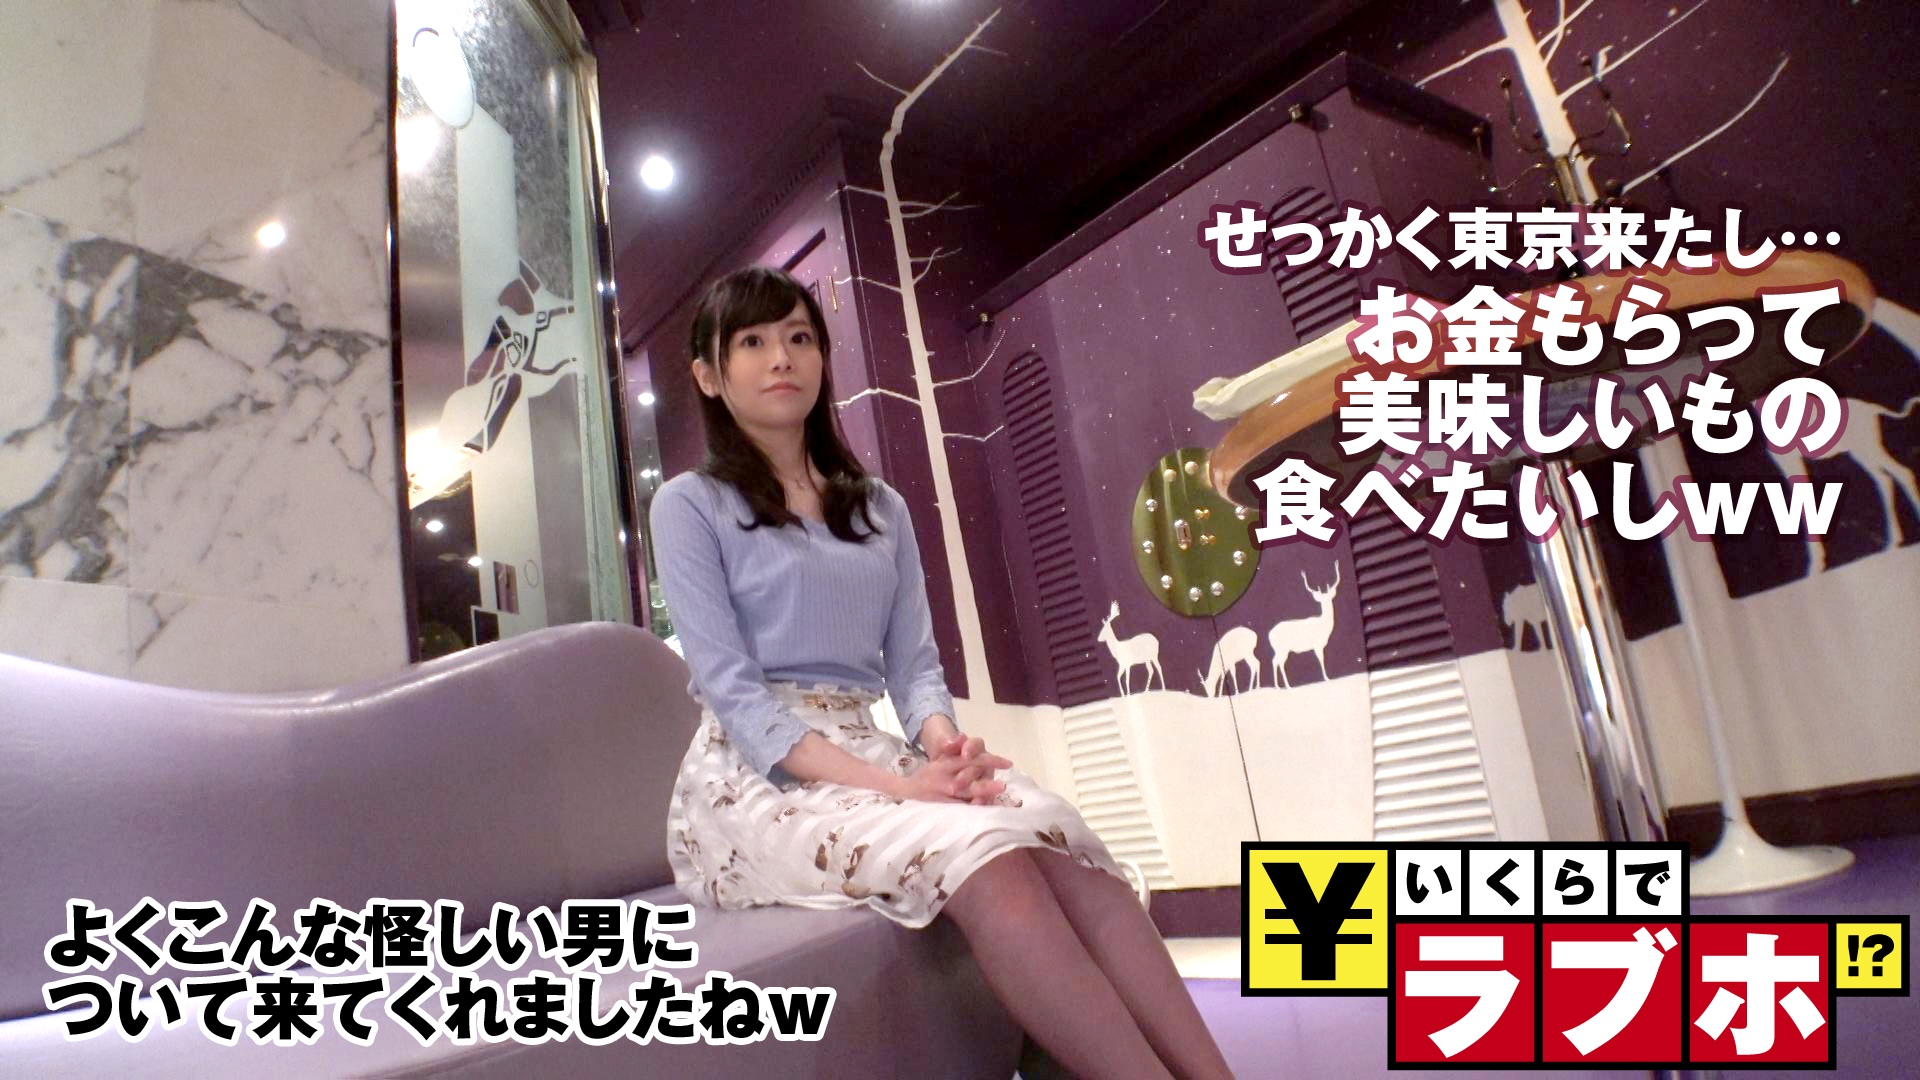 関西娘が東京で羽を伸ばす？◆大阪から新幹線に乗って遊びにやって来たくるみさん(21歳)、ノリ良くナンパ師とやり合う小悪魔系！東京土産&思い出作りにおおいにハジける！これが浪速の女豹やで！「ち○ちんキライな女の子なんていないんじゃないですか？」：いくらでラブホ！？ No.004